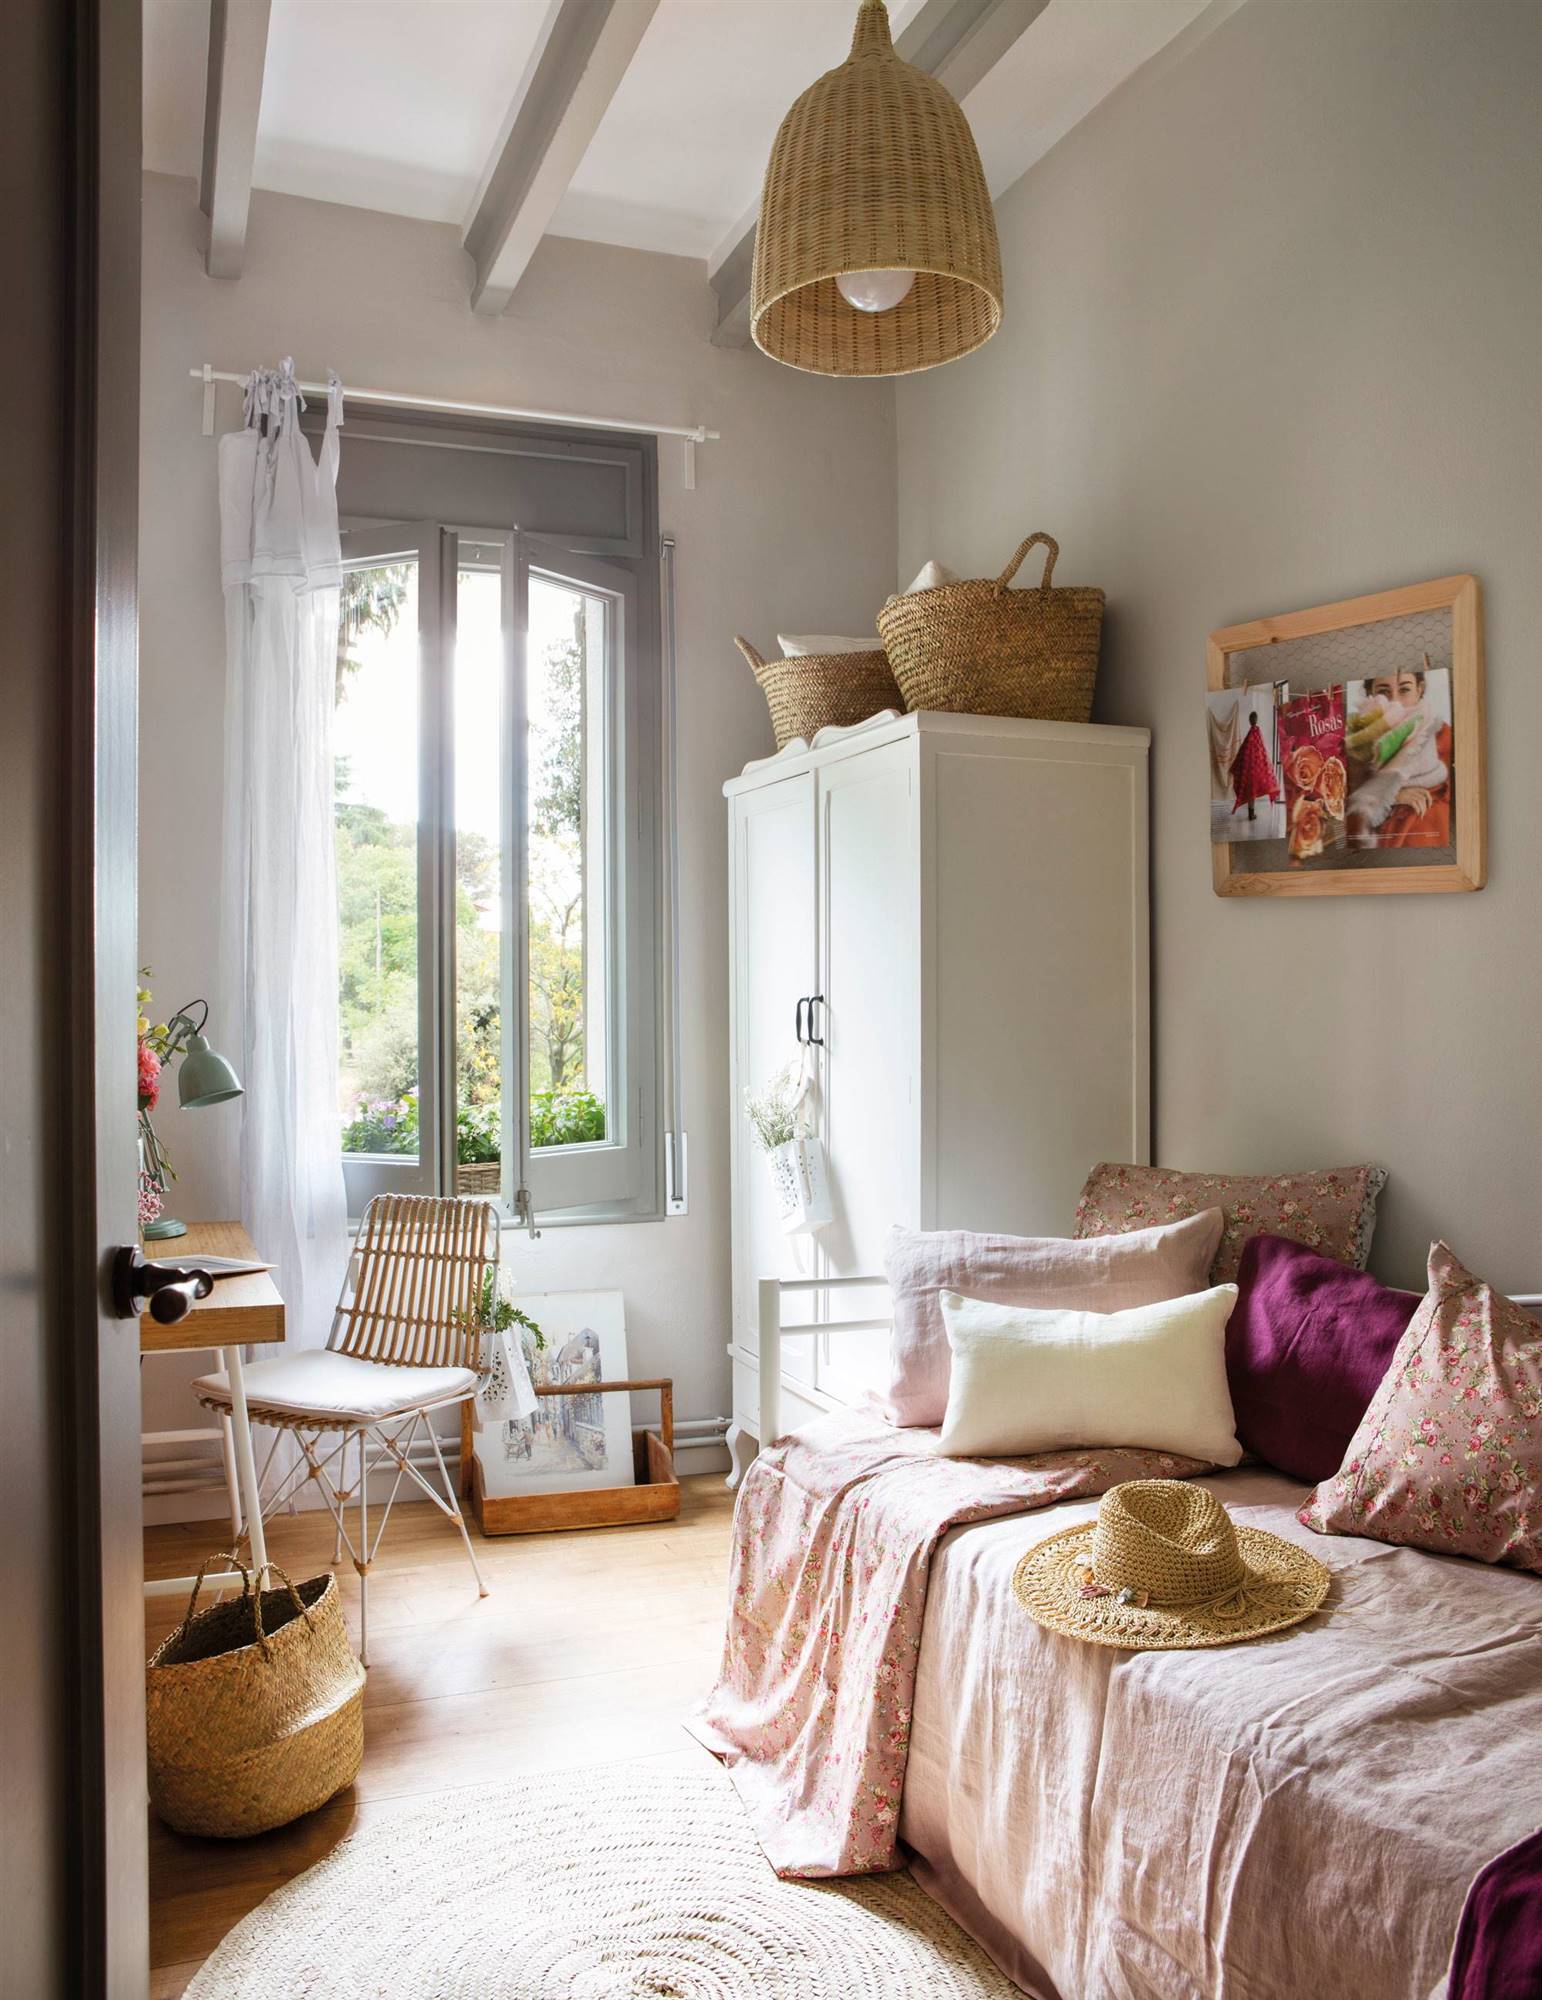 Habitación infantil con armario de estilo francés en color blanco 00465067